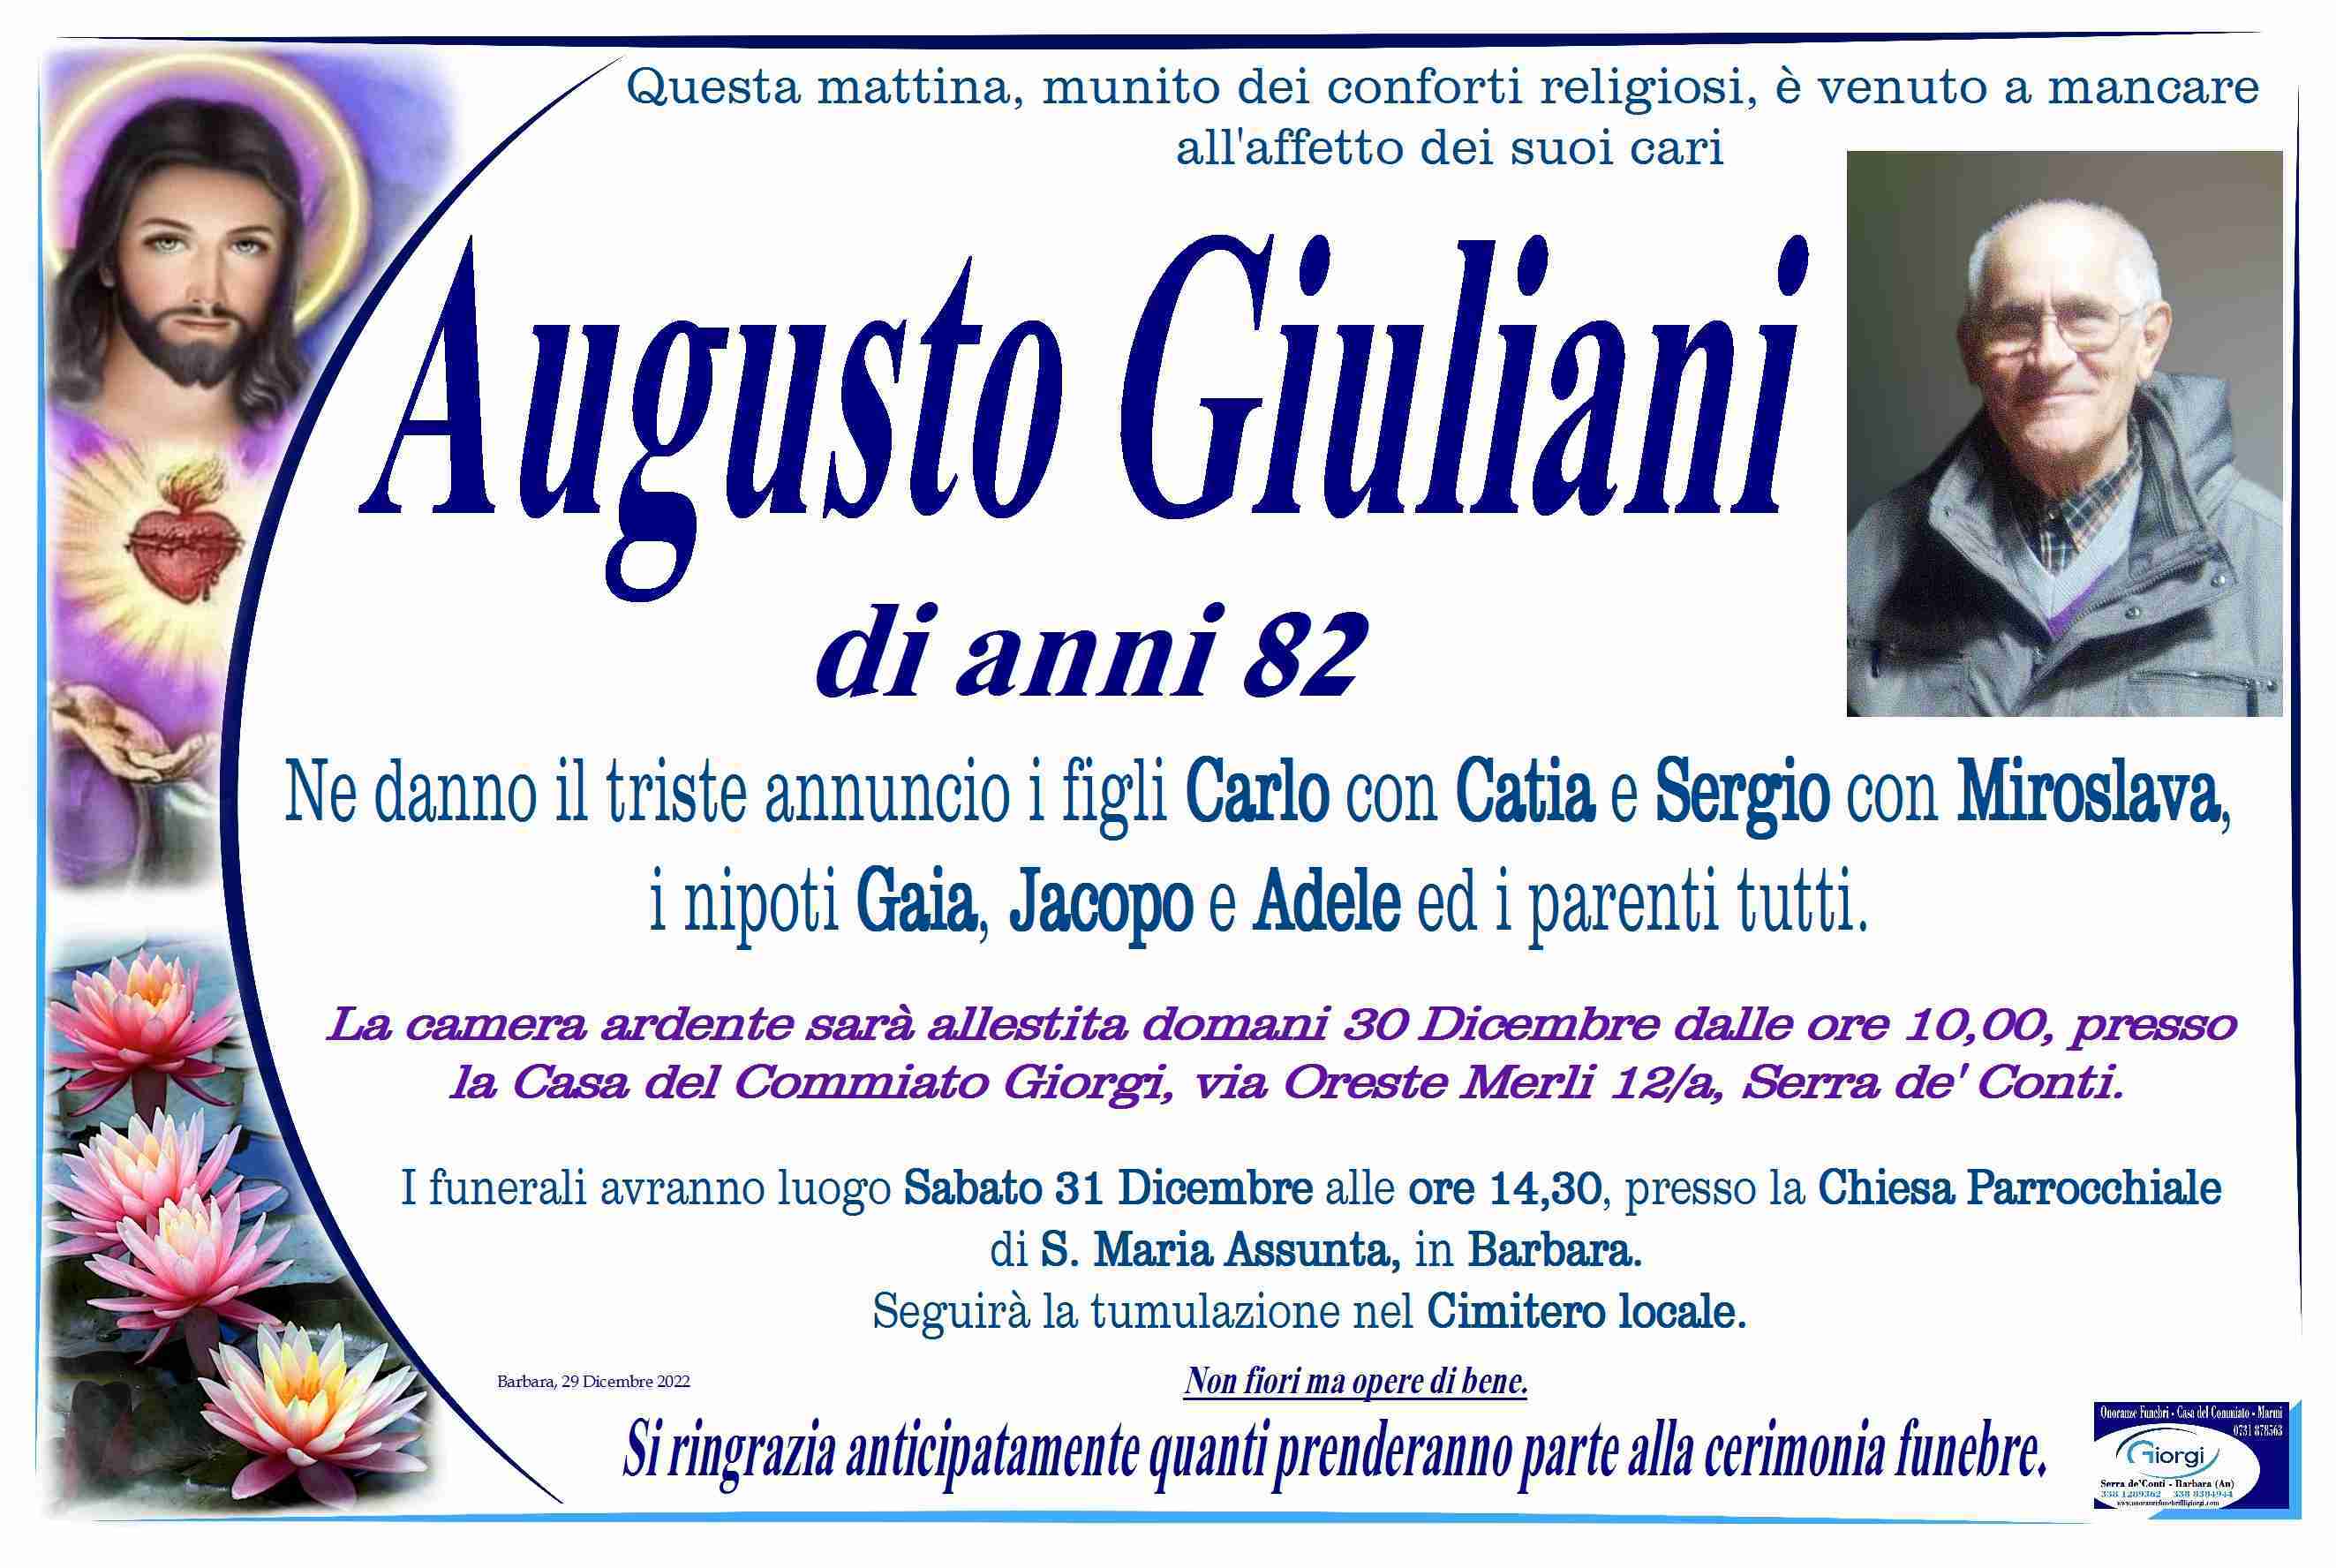 Augusto Giuliani